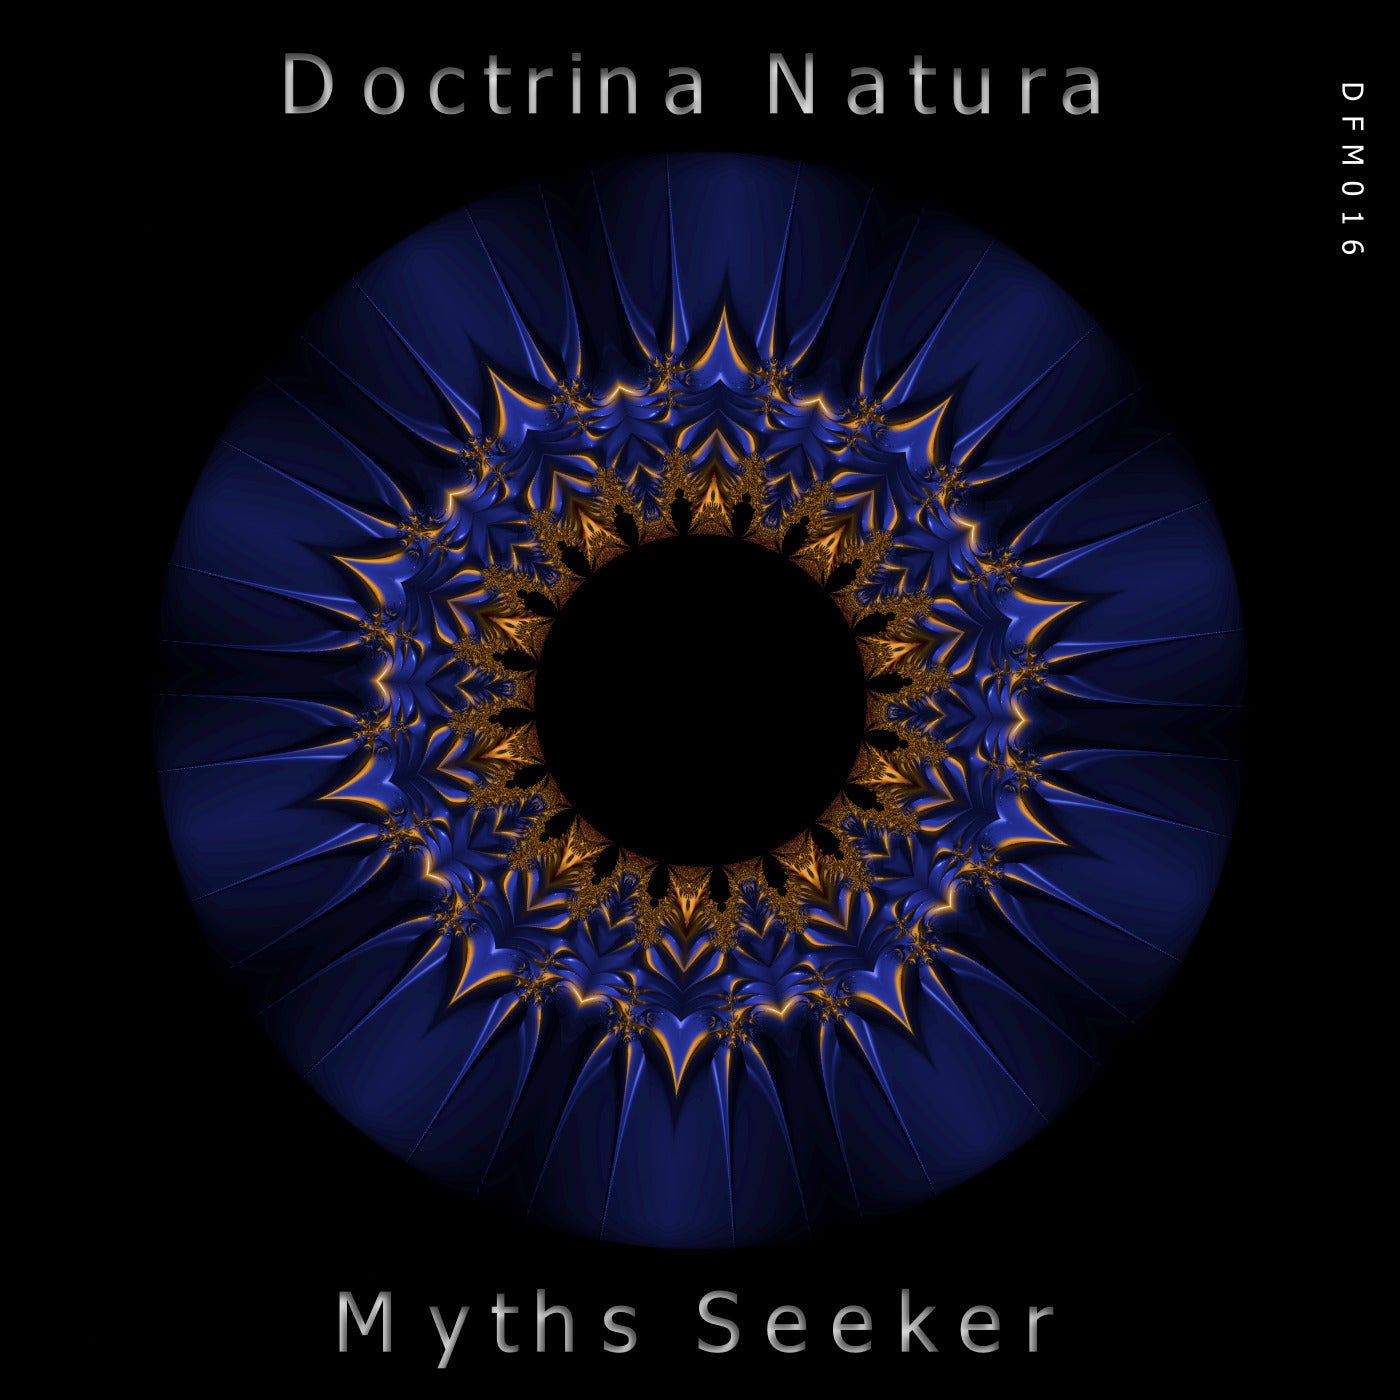 Myths Seeker - Digital